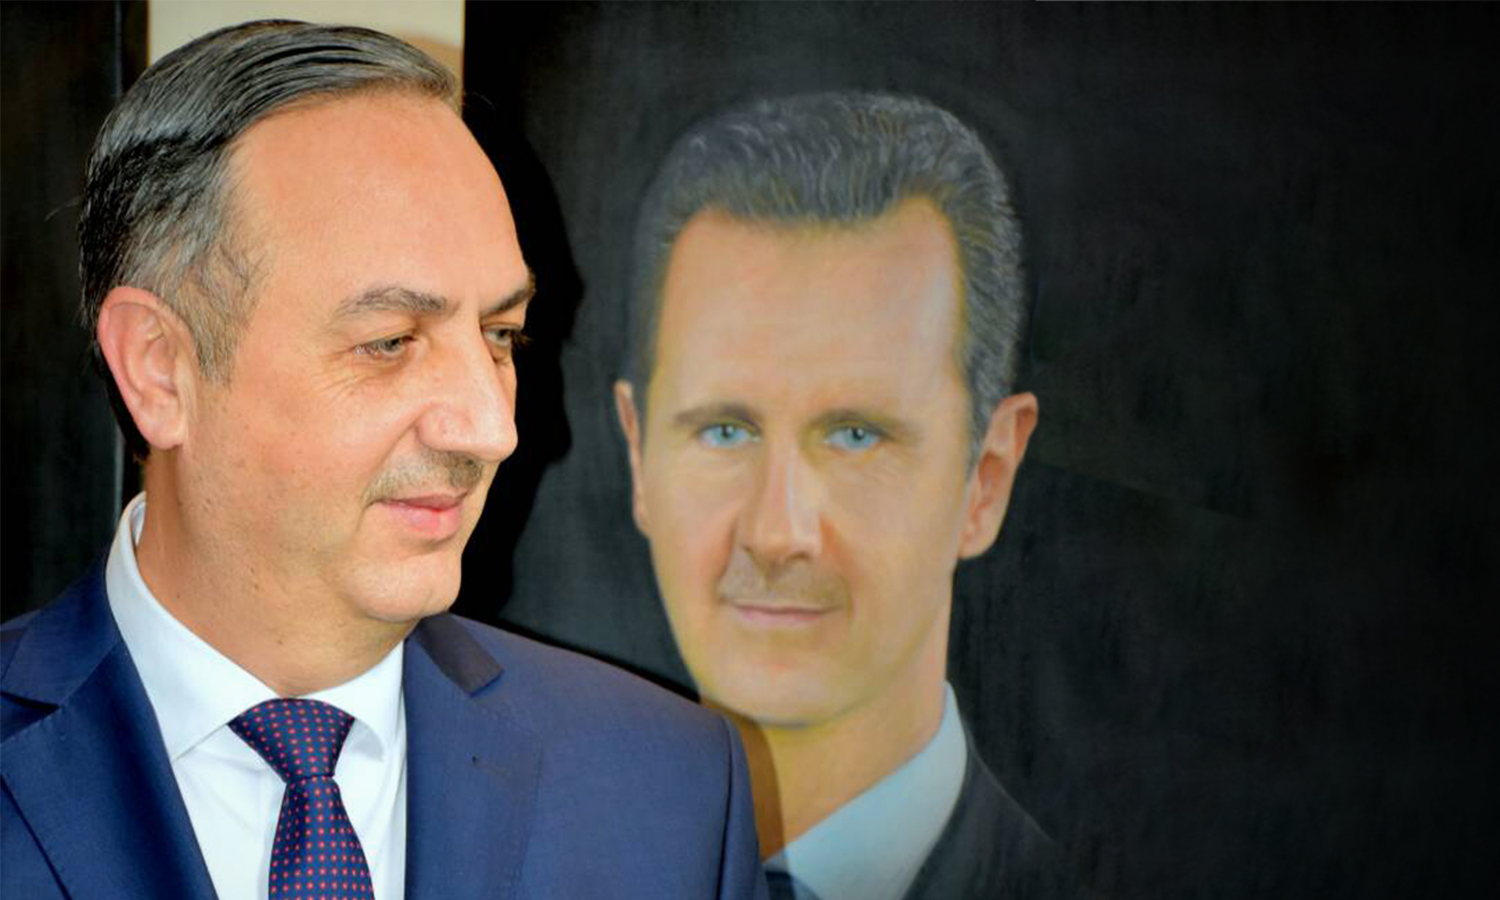 محافظ ريف دمشق علاء منير إبراهيم وخلفه صورة لرئيس النظام السوري بشار الأسد (صفحة الفنانون التشكيليون/ فيس بوك)